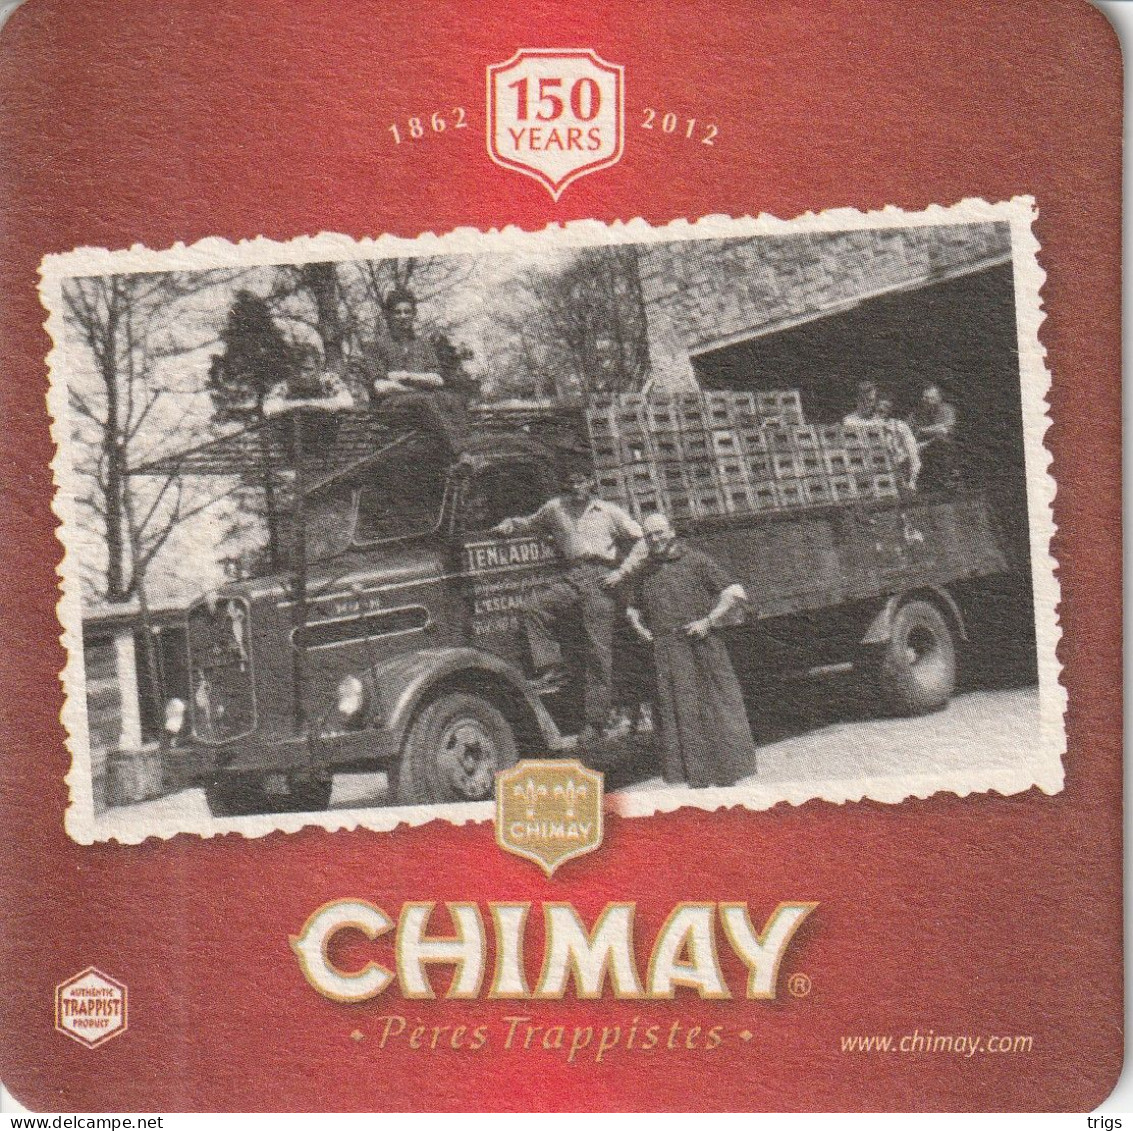 Chimay - Bierdeckel